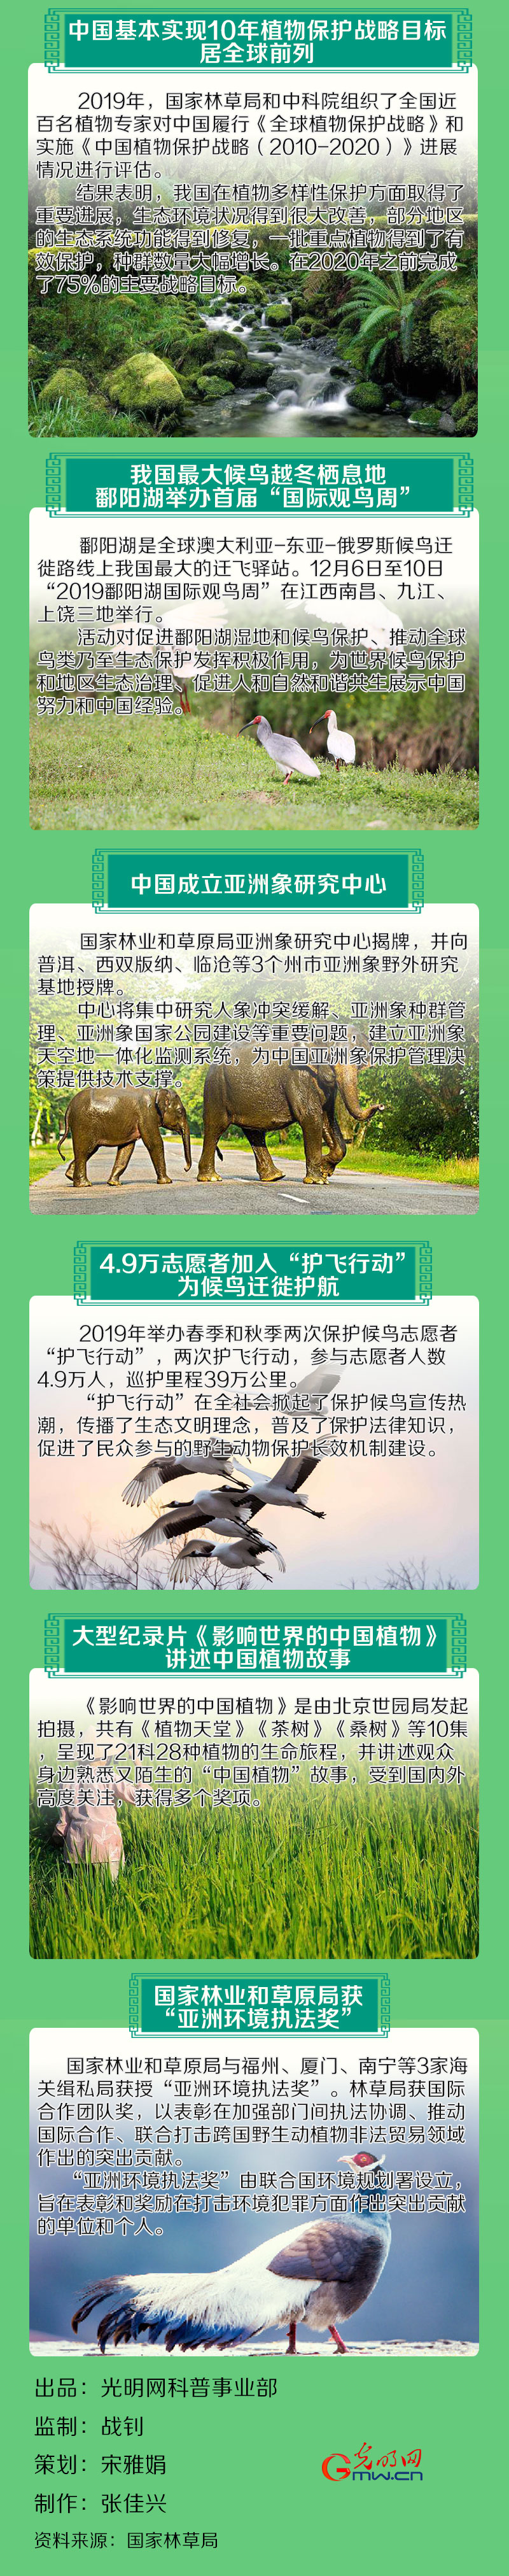 【一图读懂】野生动植物保护 2019年中国干了这十件大事